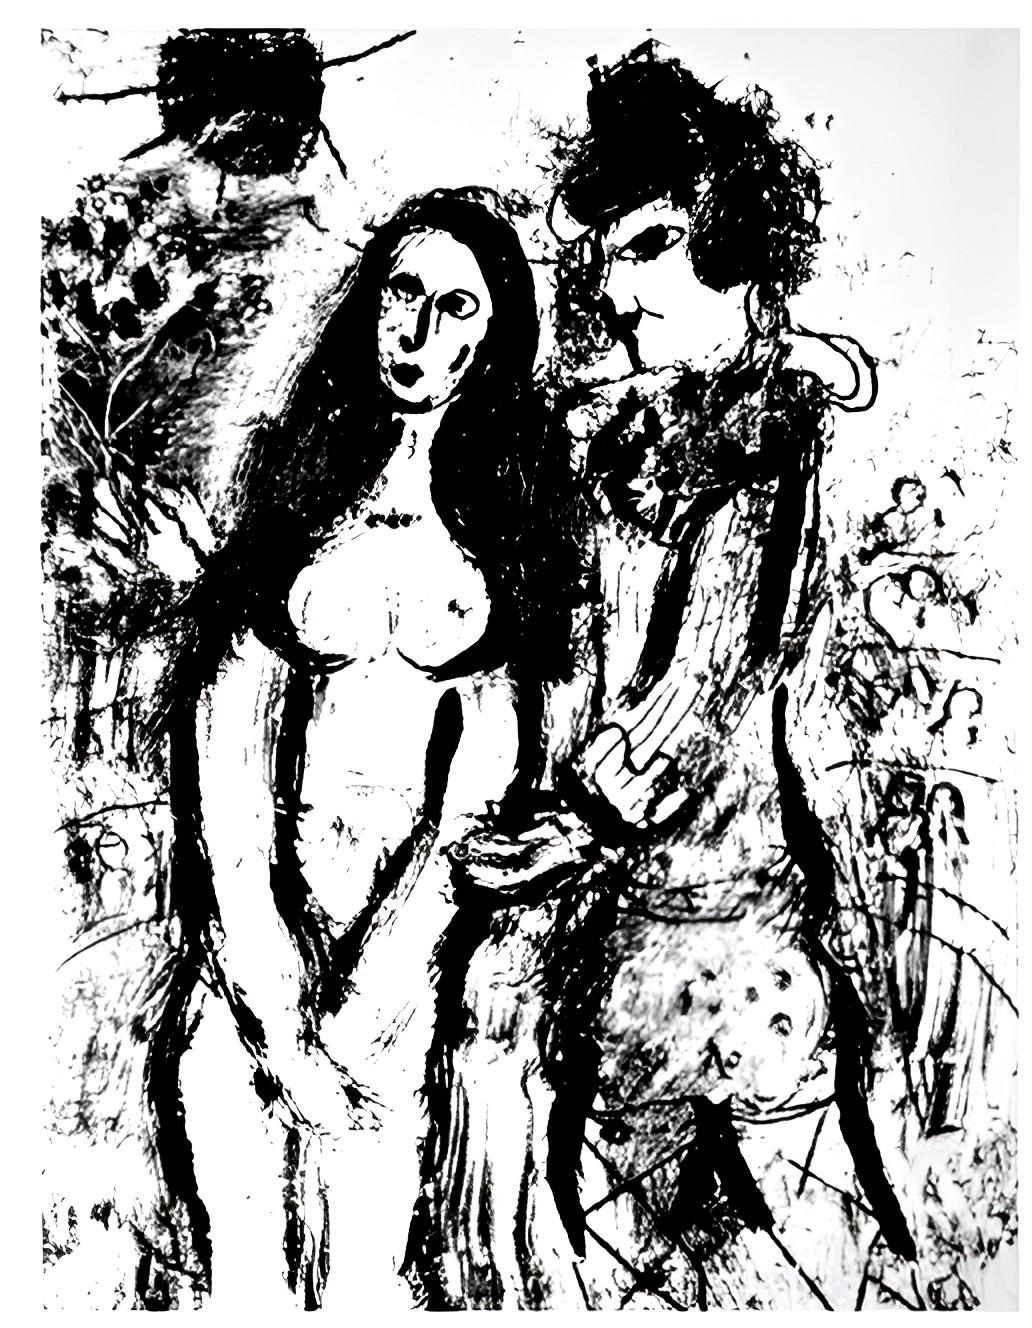 Clown In Love von Chagall Lithografien I – Print von (after) Marc Chagall